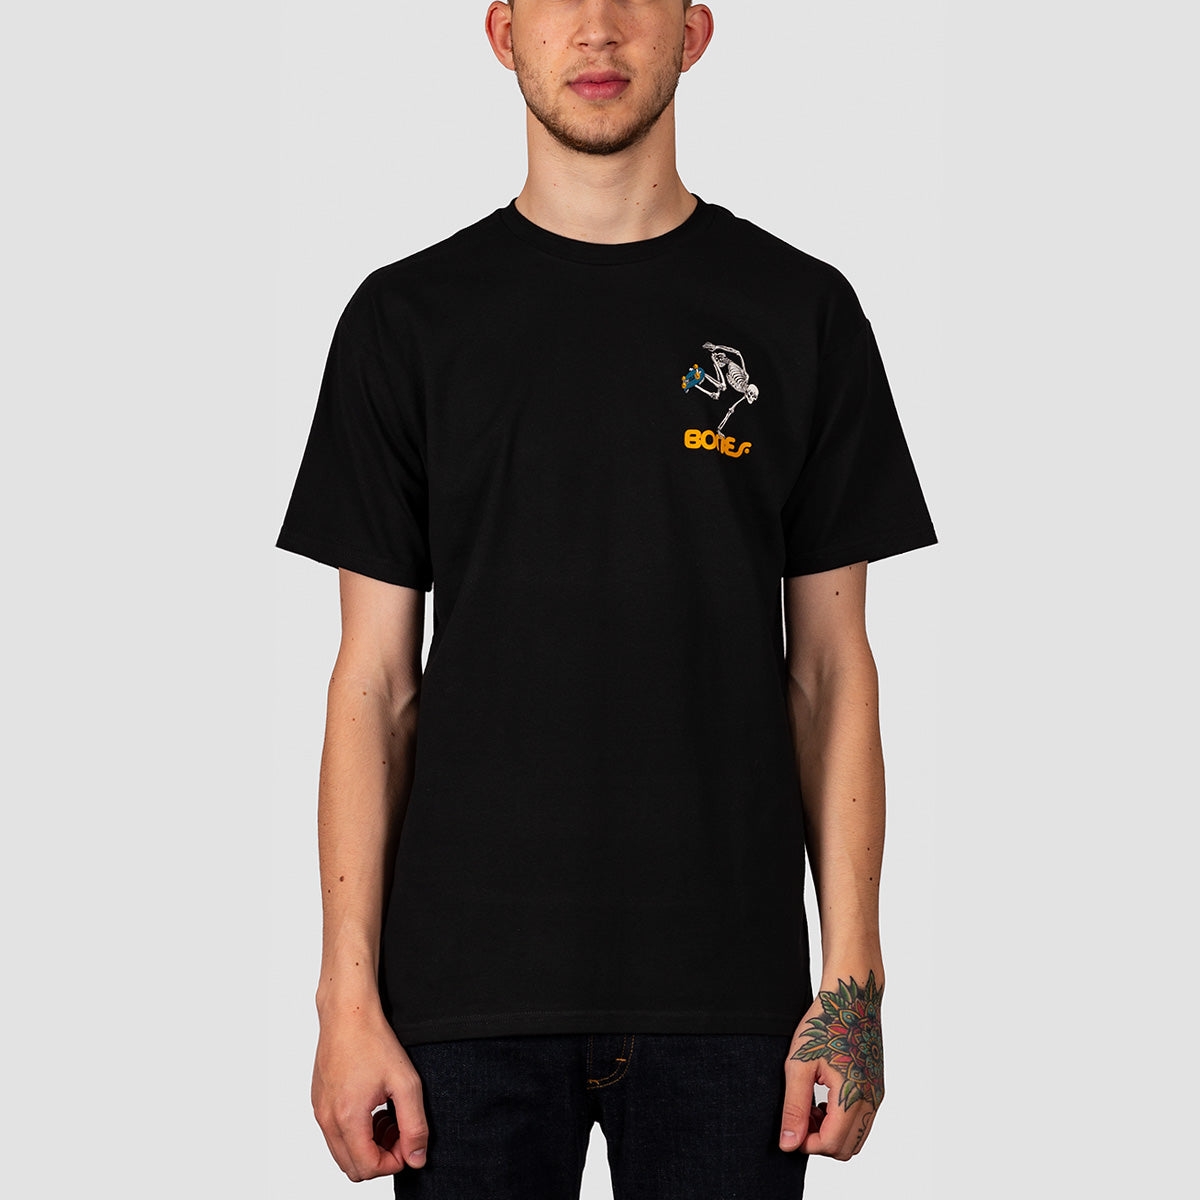 Powell Peralta Skateboarding Skeleton T-Shirt Black